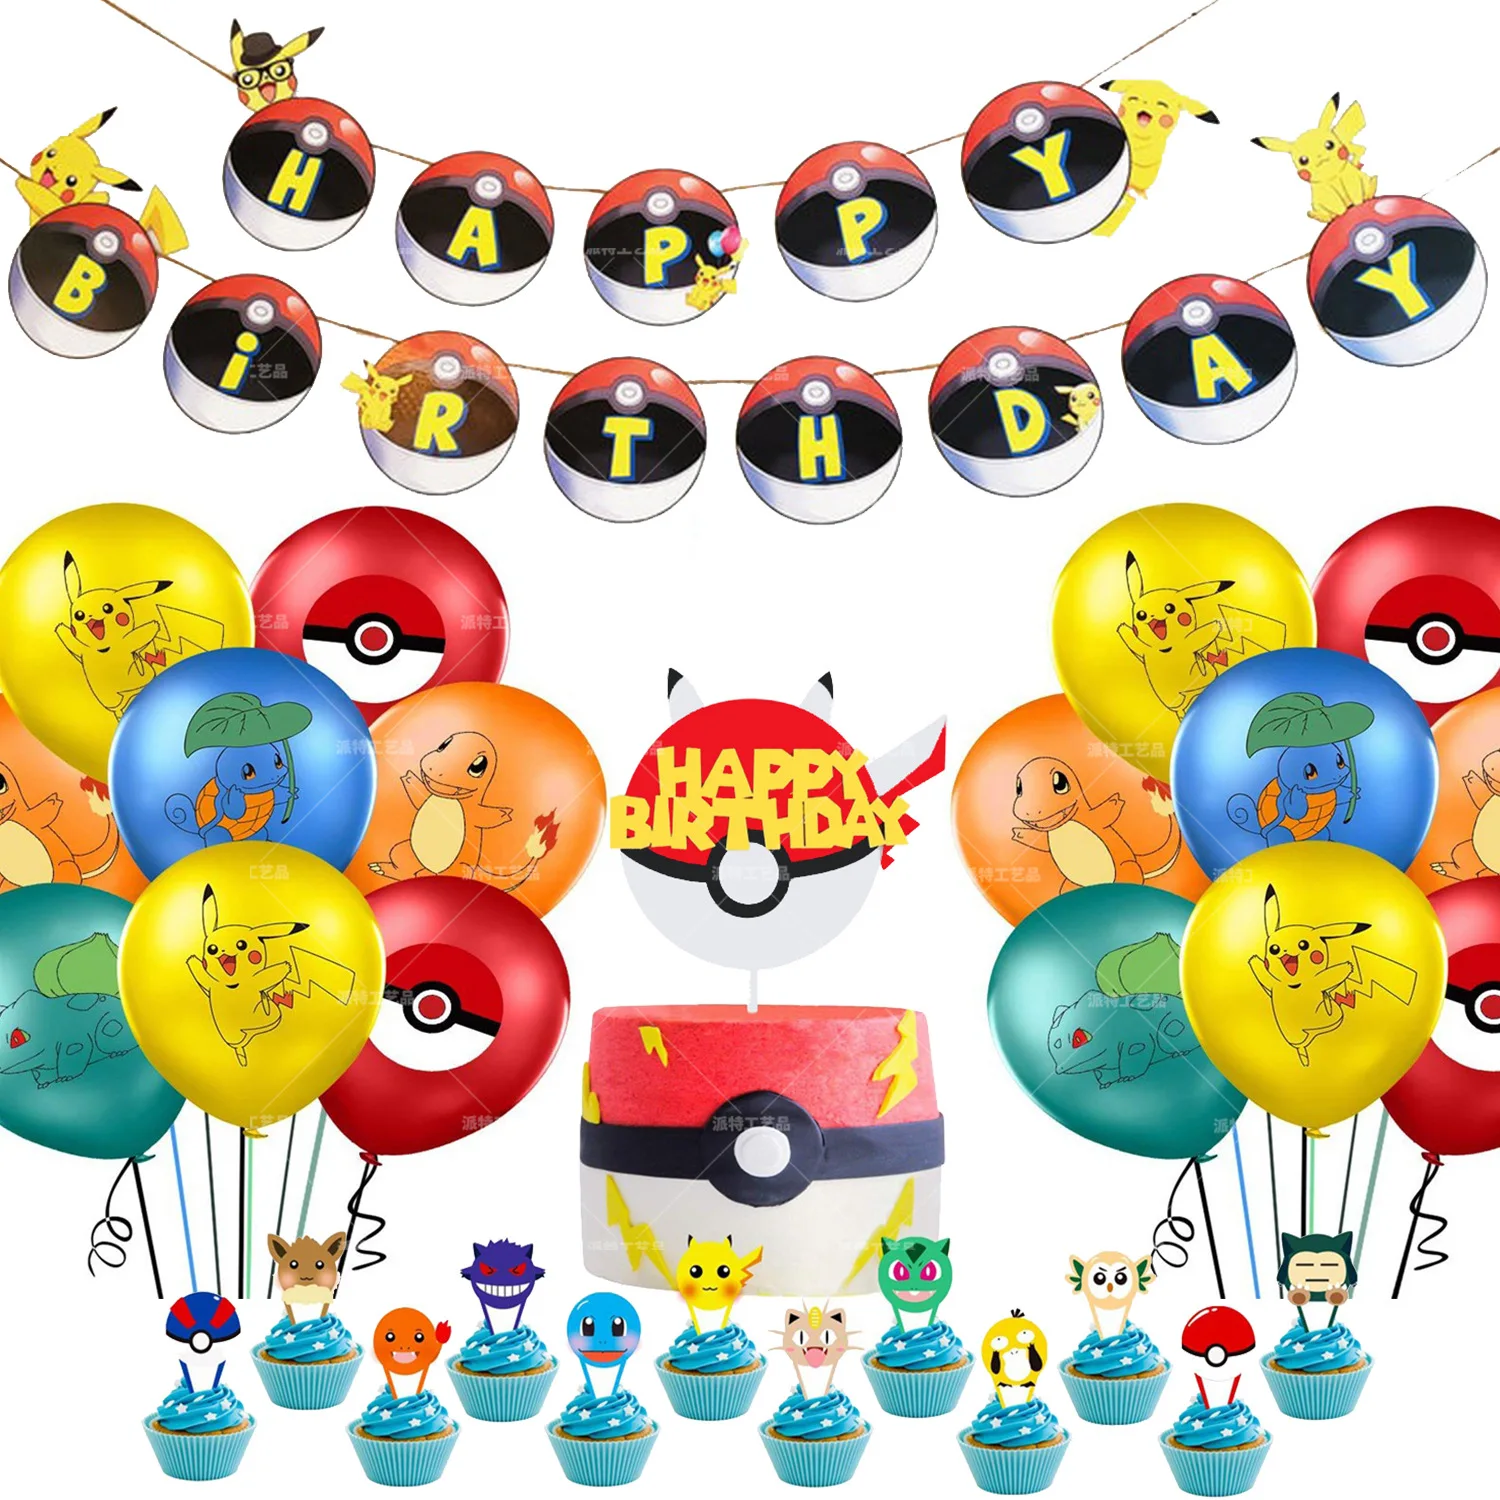 Decoración de fiesta temática de Pikachu, Pokemon, bandera colgante, bolsillo, elfo, pastel, Insertar tarjeta, Baokumeng, cumpleaños